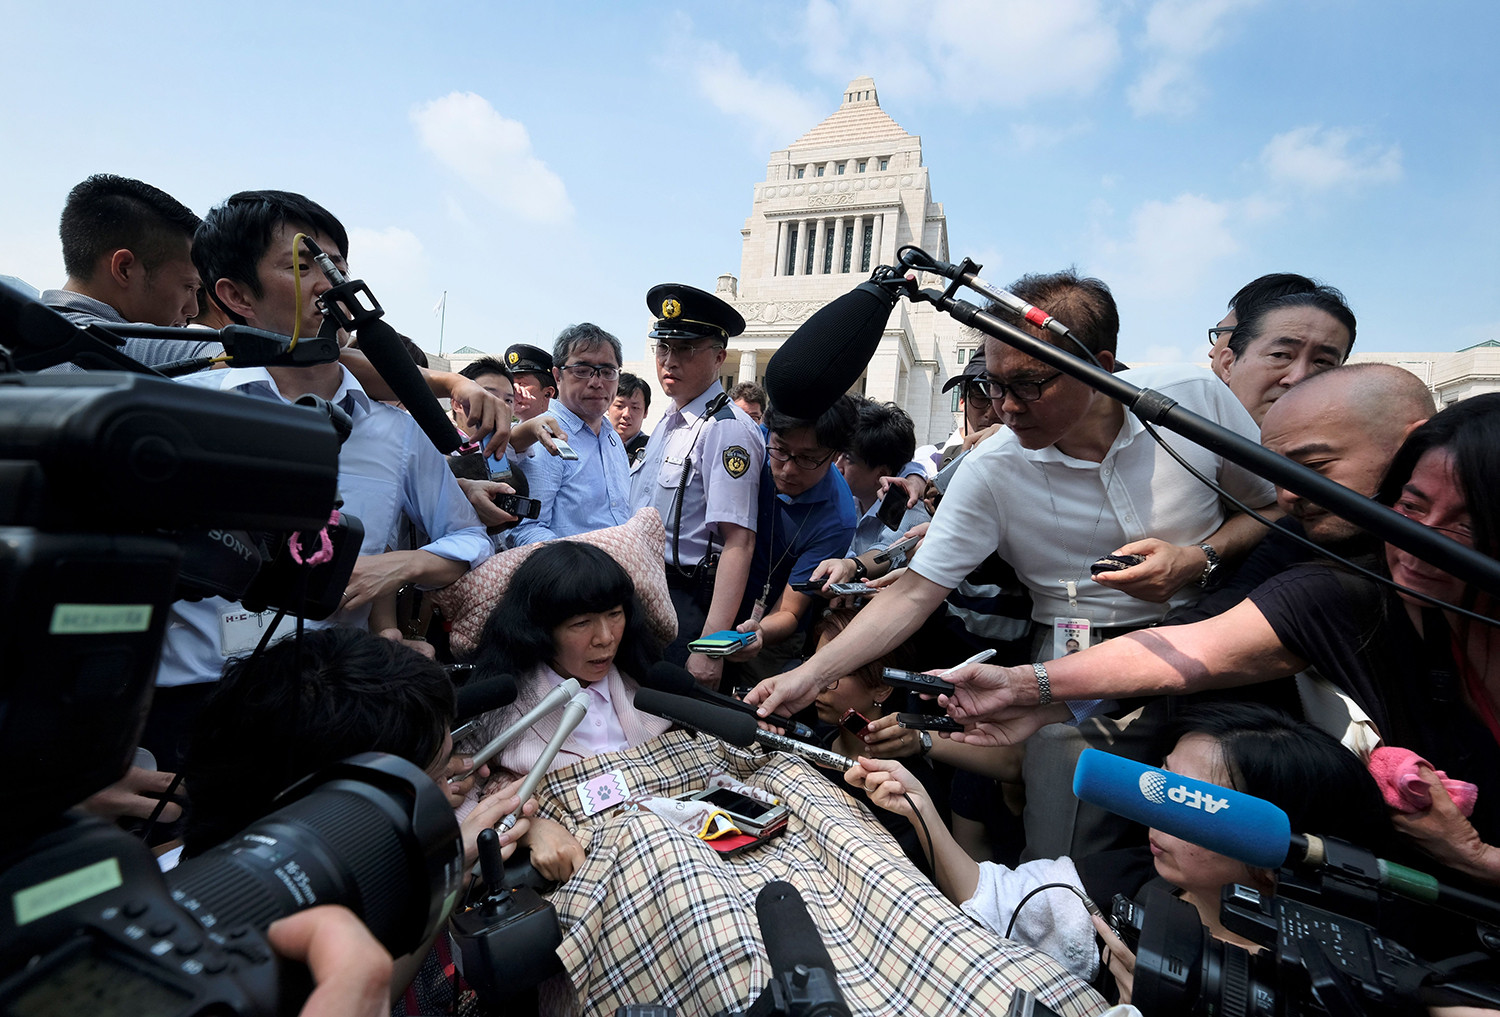   Nhà lập pháp Nhật Bản Eiko Kimura bị bao vây bởi các phương tiện truyền thông khi cô đến Quốc hội ở Tokyo vào ngày 1/8. Hai nhà lập pháp bị tê liệt nghiêm trọng đã ngồi vào thượng viện của Nhật Bản để cổ vũ những người ủng hộ, đánh dấu lần đầu tiên những người khuyết tật vào Thượn viện.  